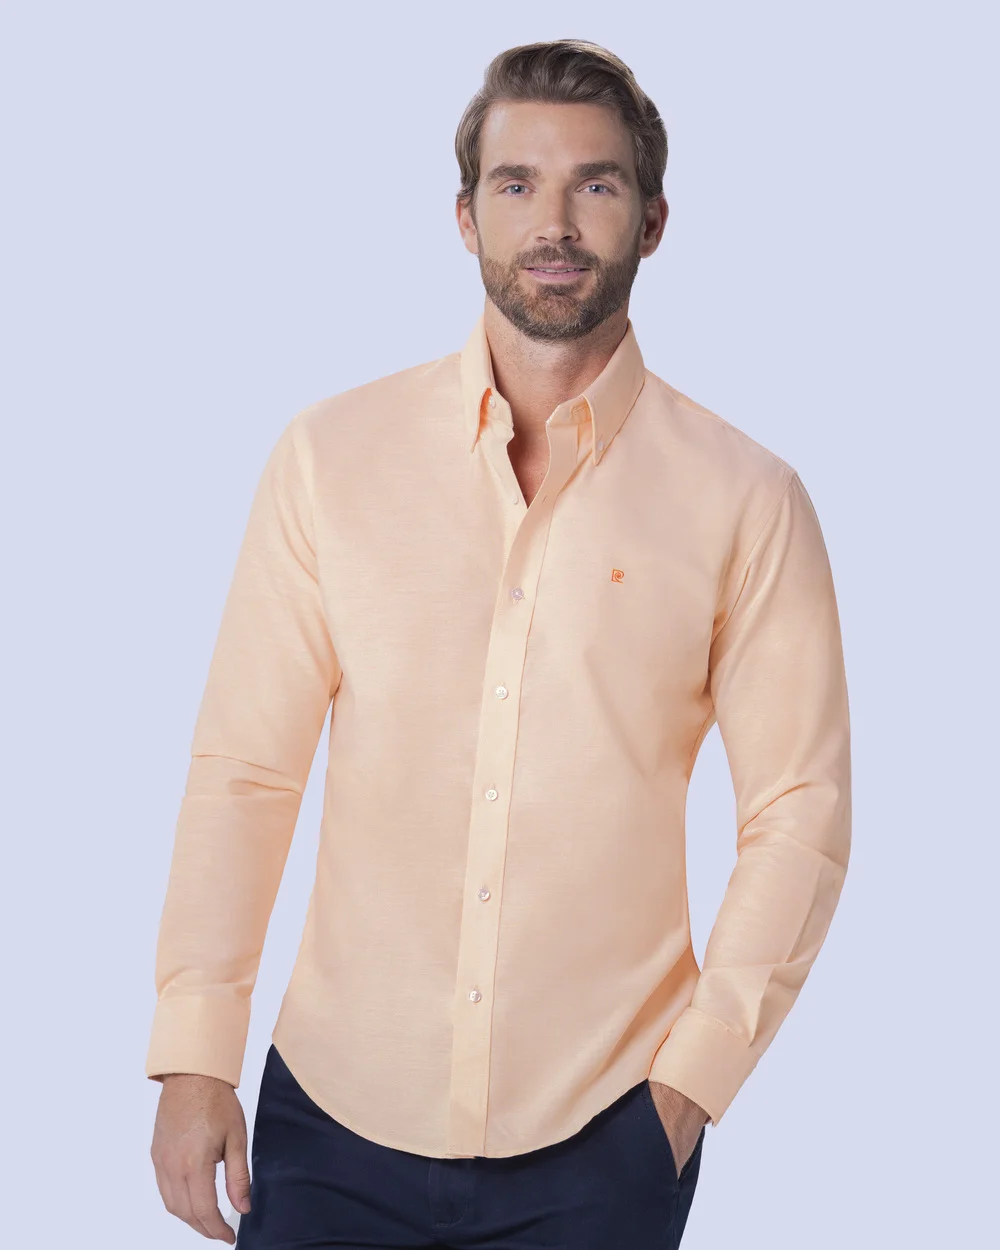 Camisa slim fit manga larga oxford color naranja claro